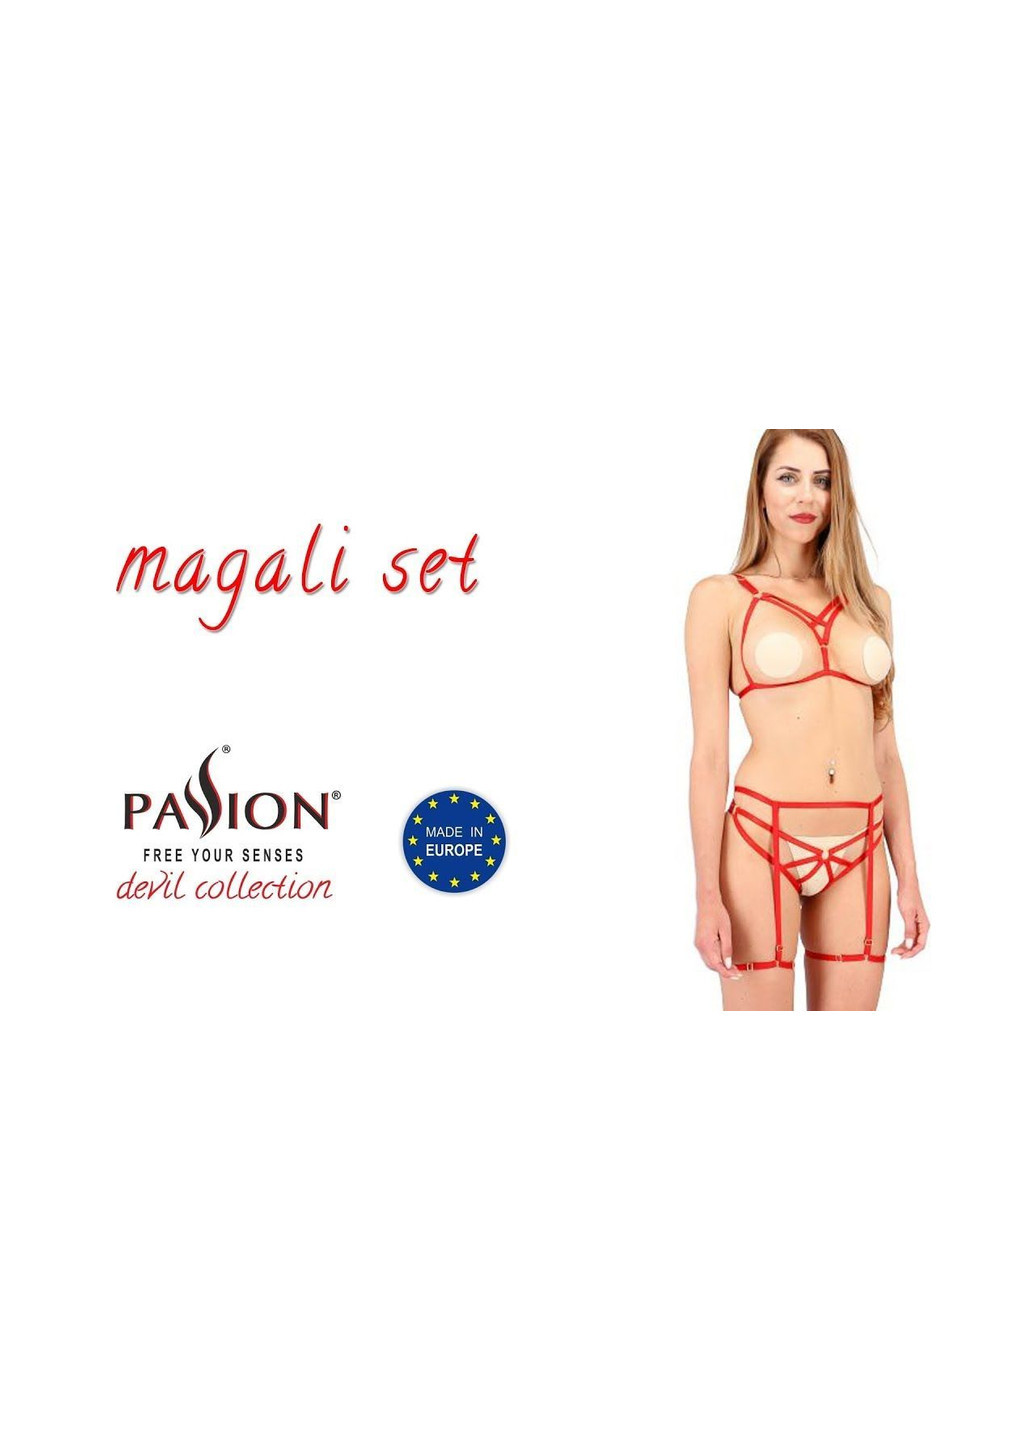 Красный демисезонный комплект белья magali set openbra red l/xl - exclusive Passion